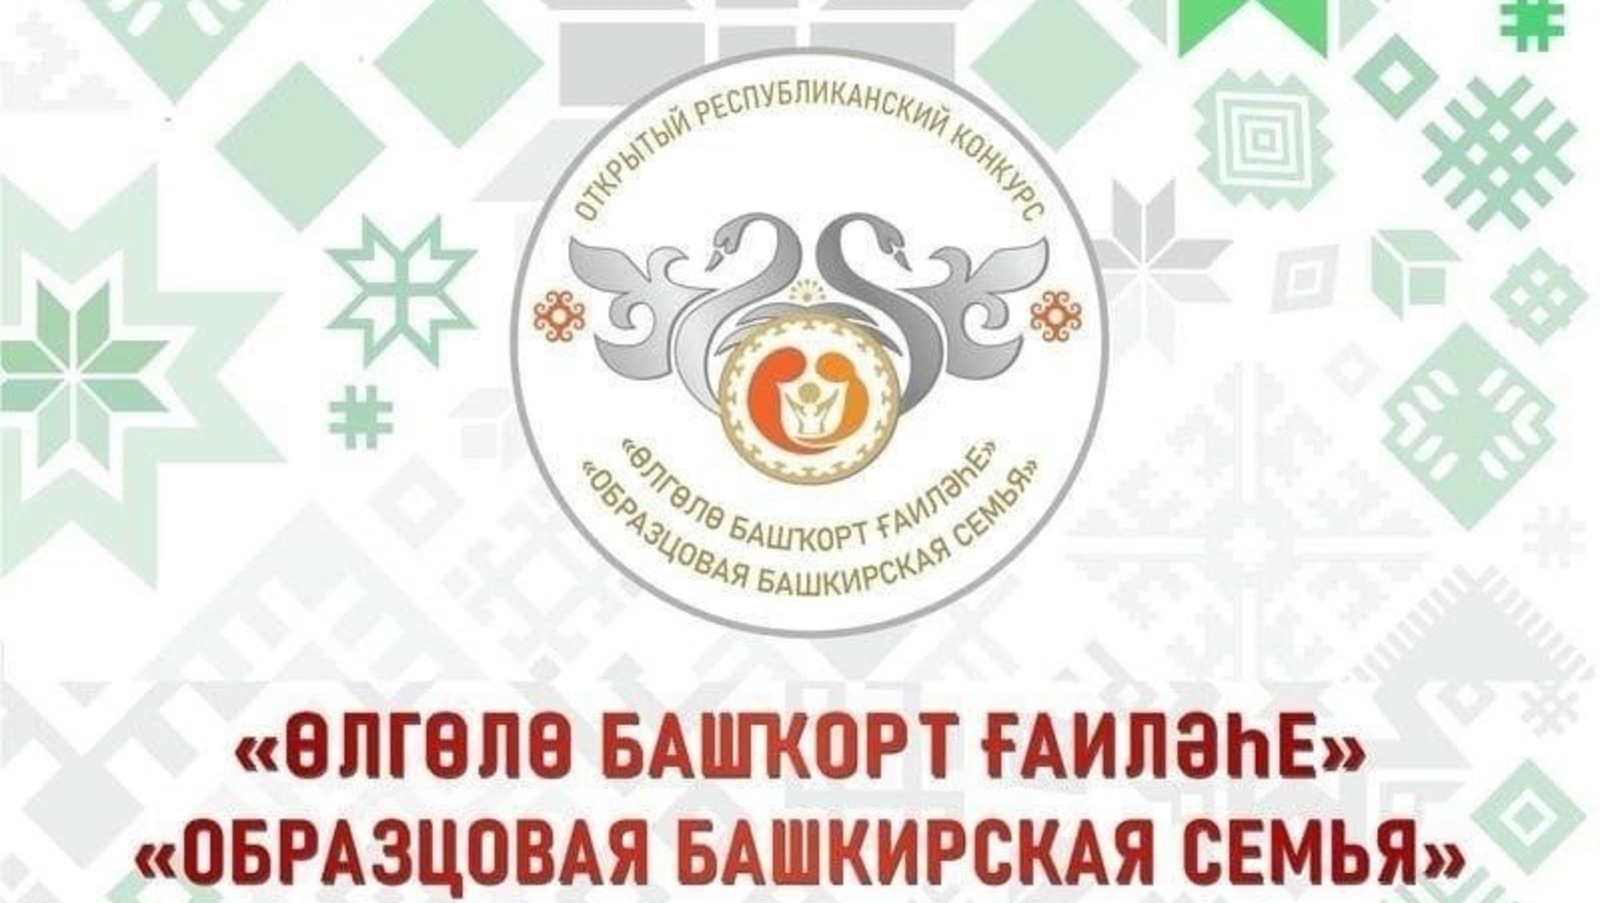 В Башкирии продолжается прием заявок на конкурс «Образцовая башкирская семья»